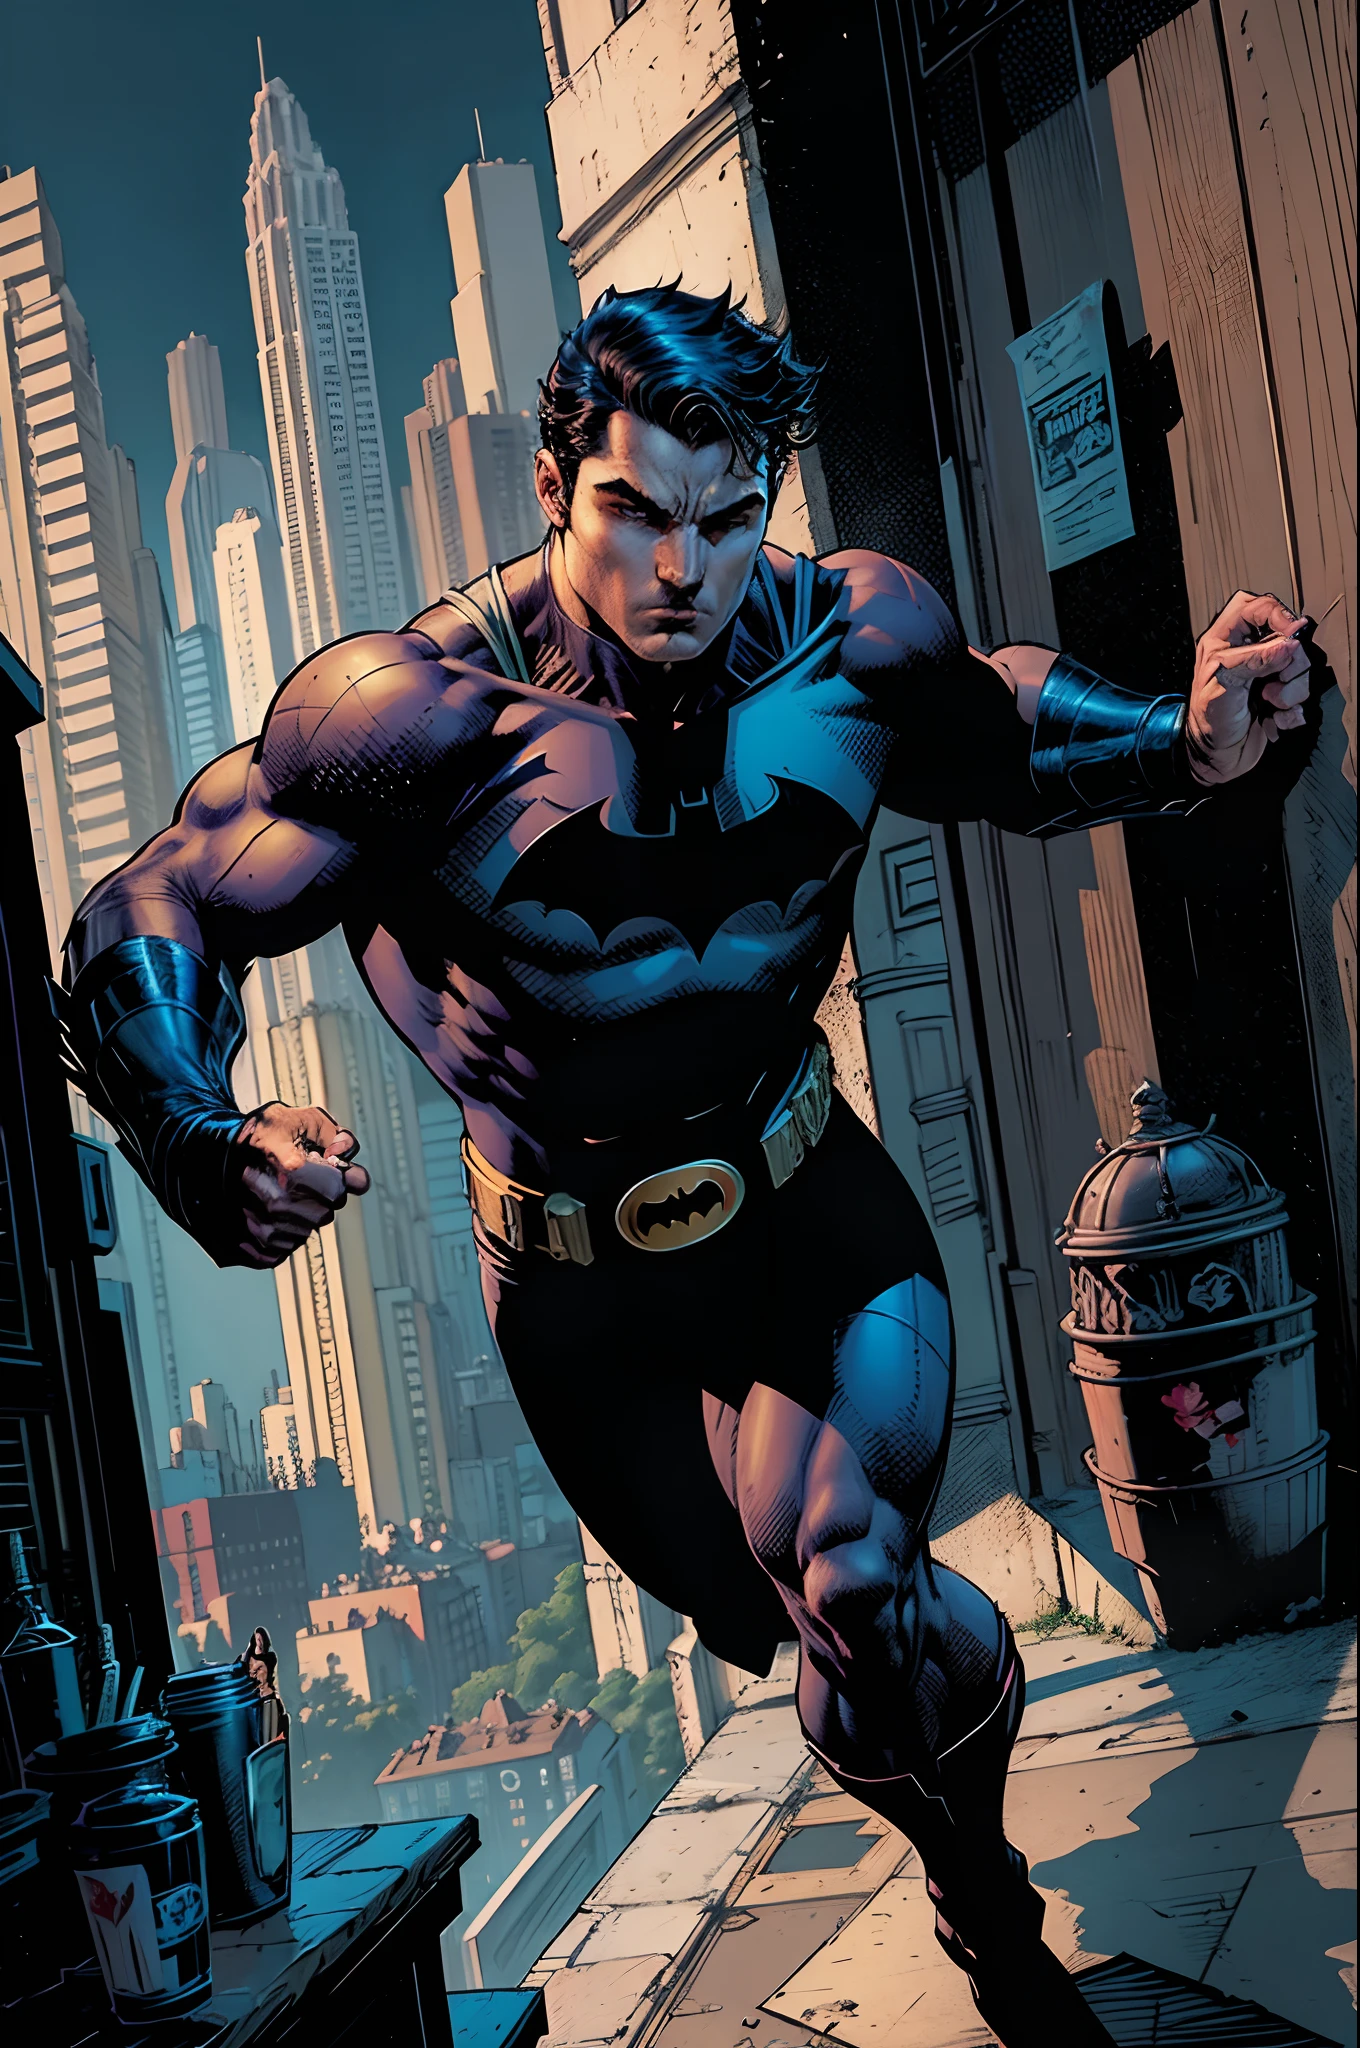 Robin, das Wunderkind, Sohn von Batman oder Bruce Wayne, Rebell, listig, stark, jnlclinado um Gerechtigkeit zu erlangen, Liebhaber von Kampfsportarten wie Jiu Jitsu, Aikido, Kung Fú and others, DC COMICS-Zeichenstil, Die dunkle Stadt.